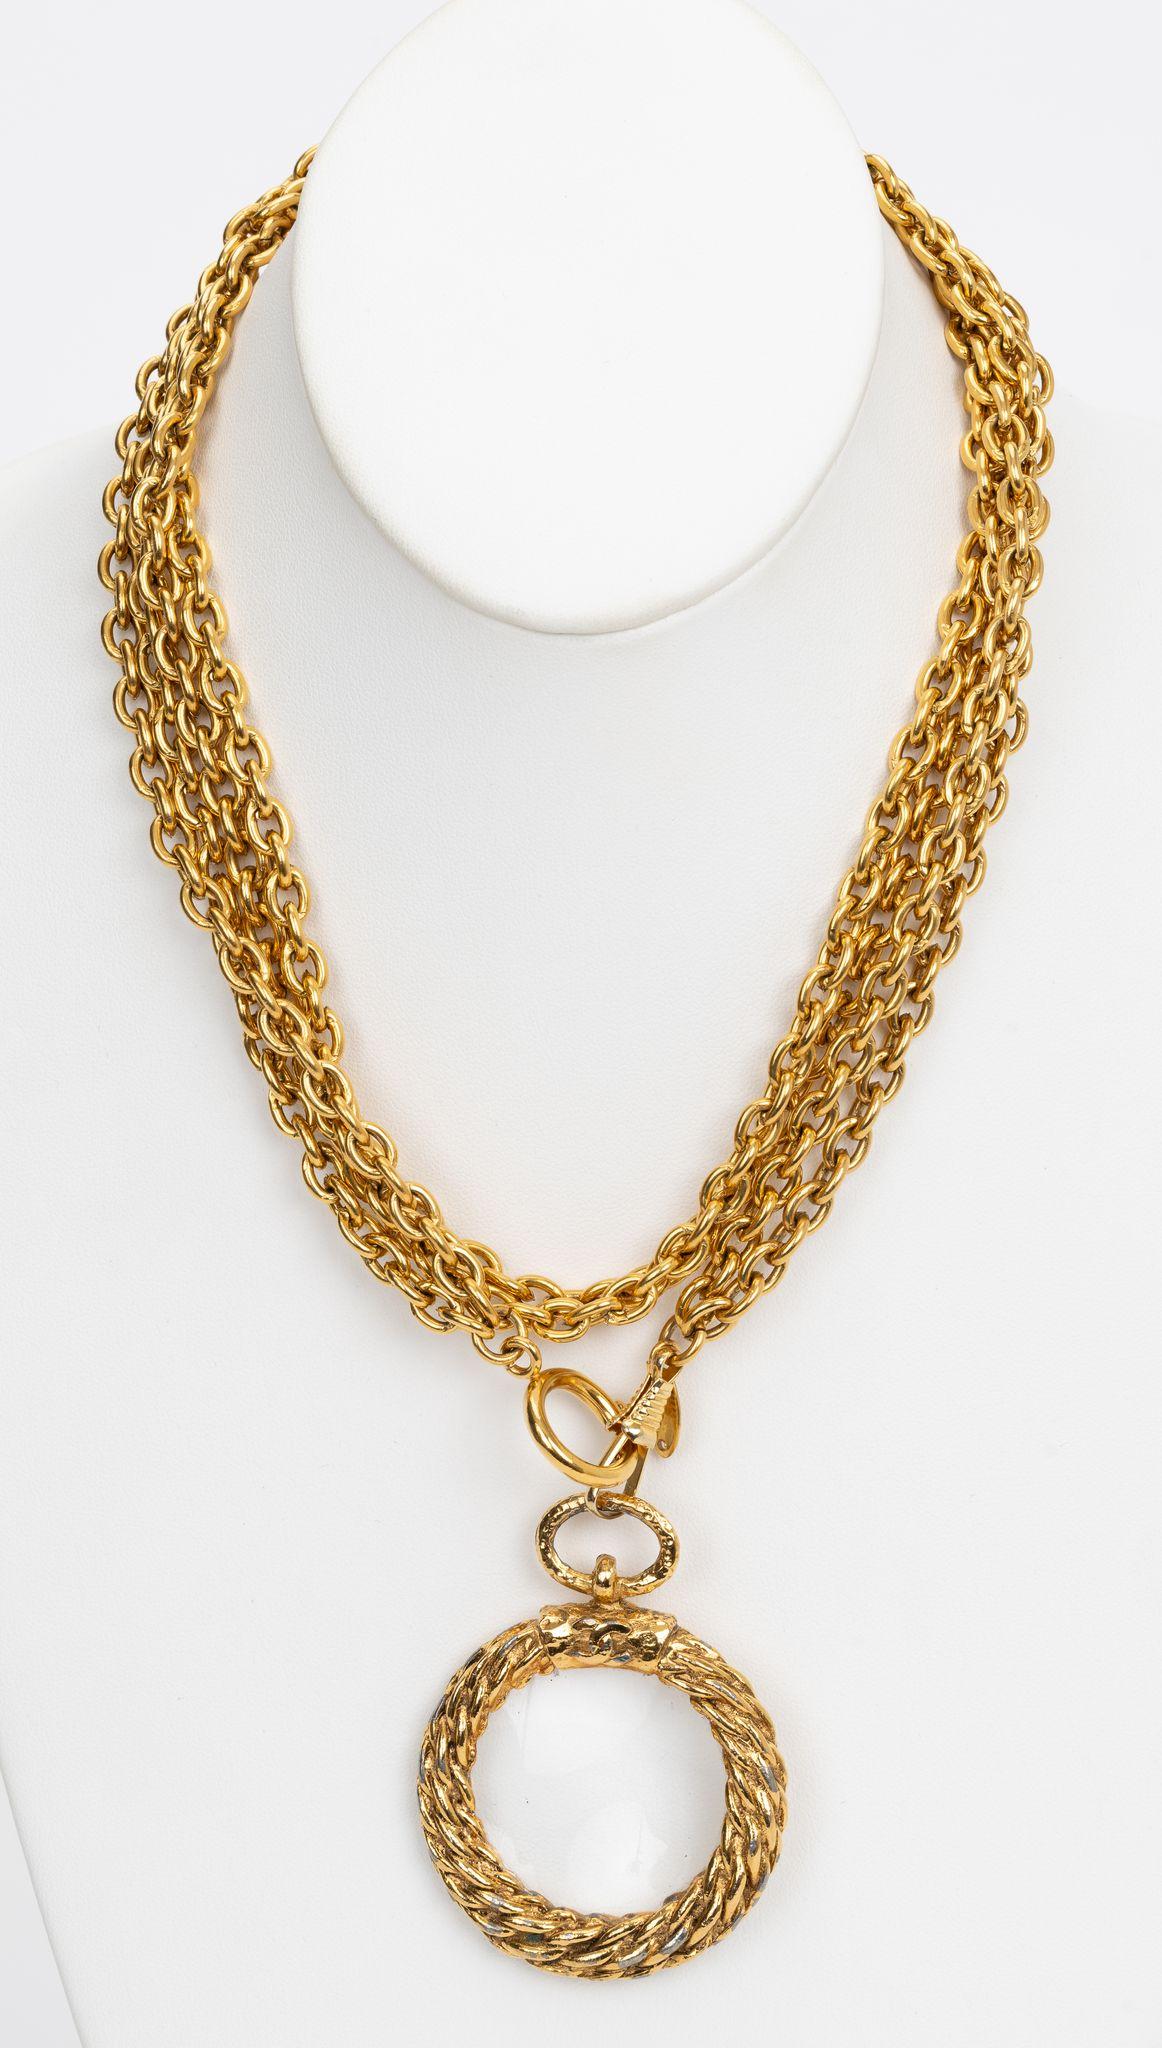 Chanel Cocomark Loupe Halskette ist eine schöne lange vergoldete Halskette. Doppelte Kette, kann lang oder doppelt kurz getragen werden.  Ein eindeutiges Statement. Anhänger 2,5